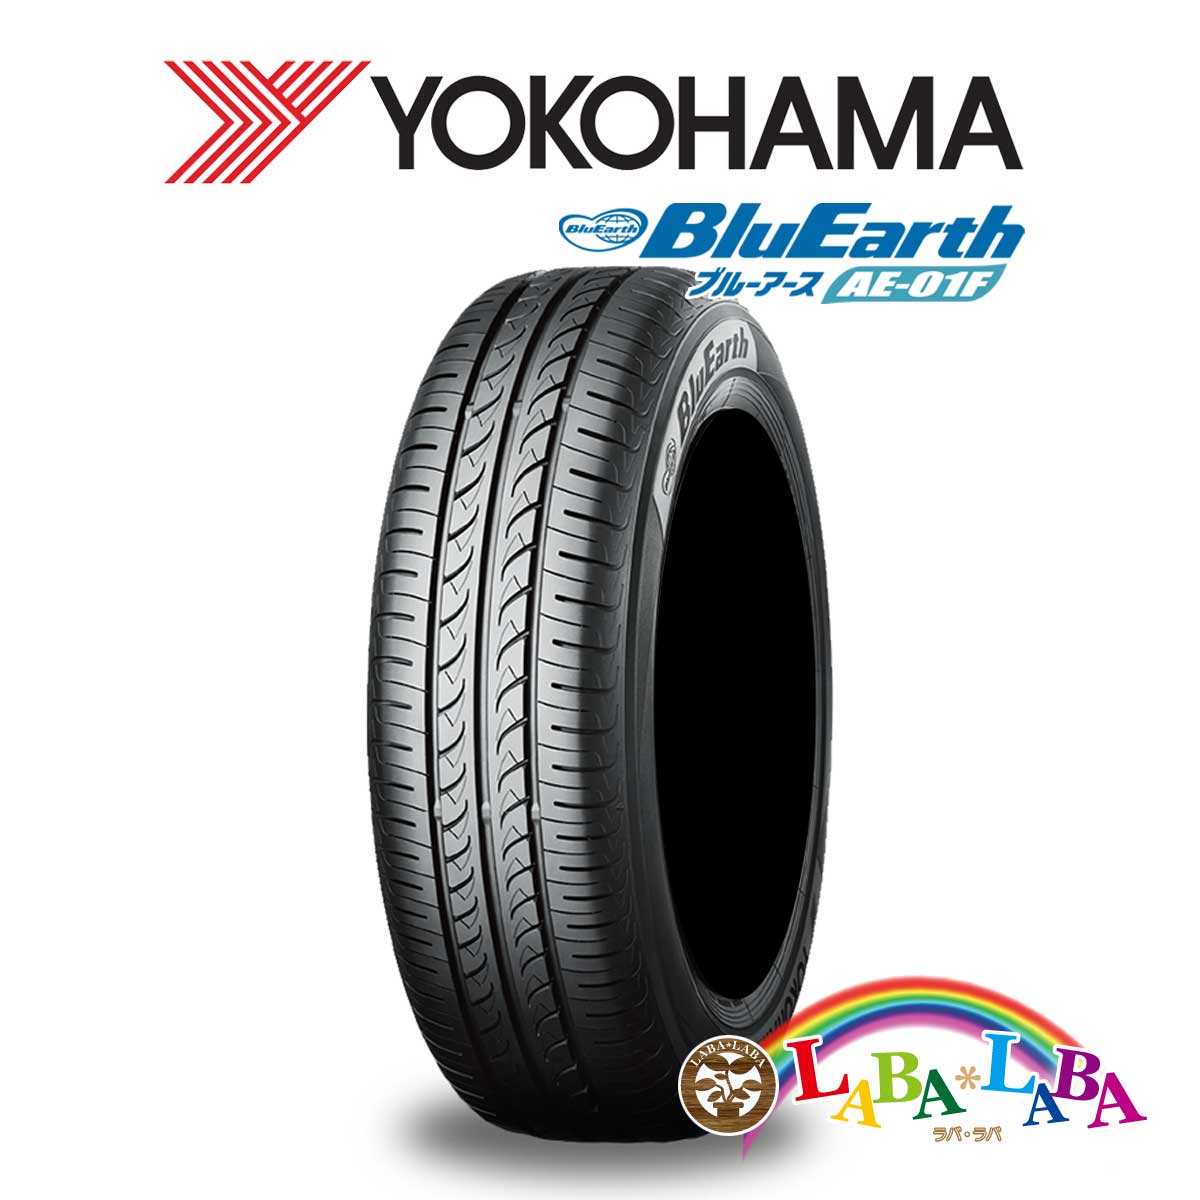 送料無料 国産タイヤ サマータイヤ 訳あり品送料無料 新品 タイヤのみ 2本SET YOKOHAMA ヨコハマ 最大92%OFFクーポン 91H 195 AE01F 65R15 2本セット ブルーアース BluEarth